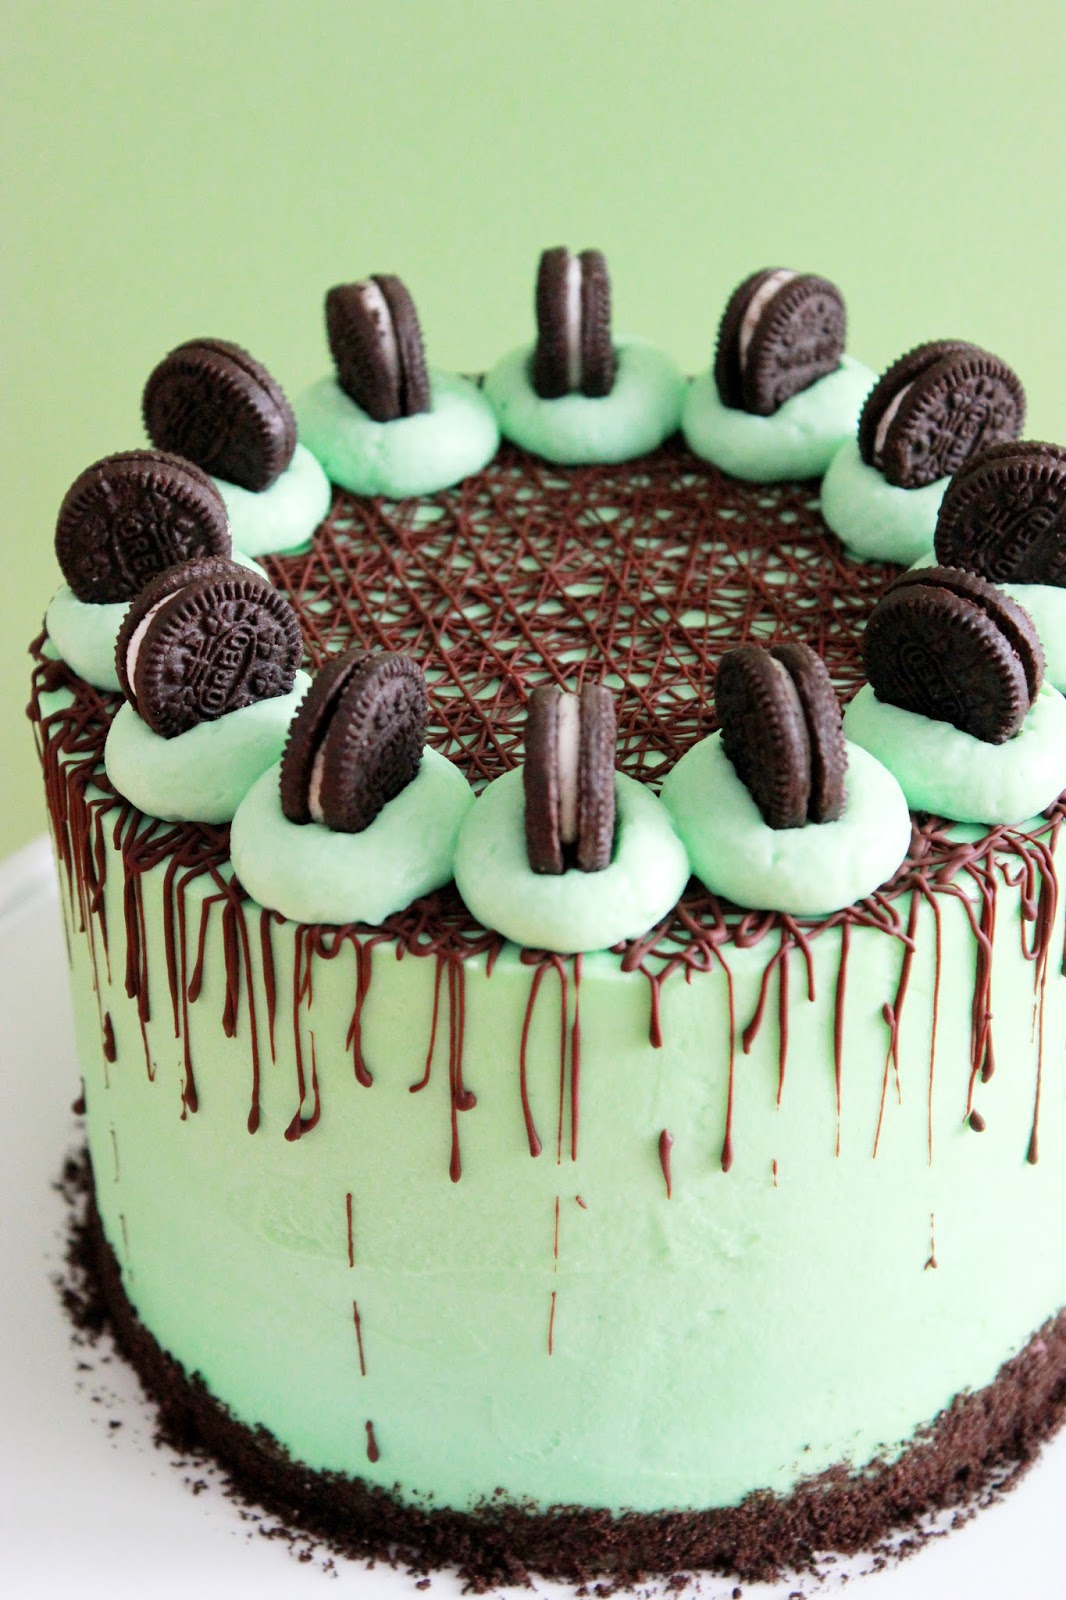 Kiara`s cakes: Tarta de Oreo, chocolate y menta / Oreo Chocolate Mint Cake